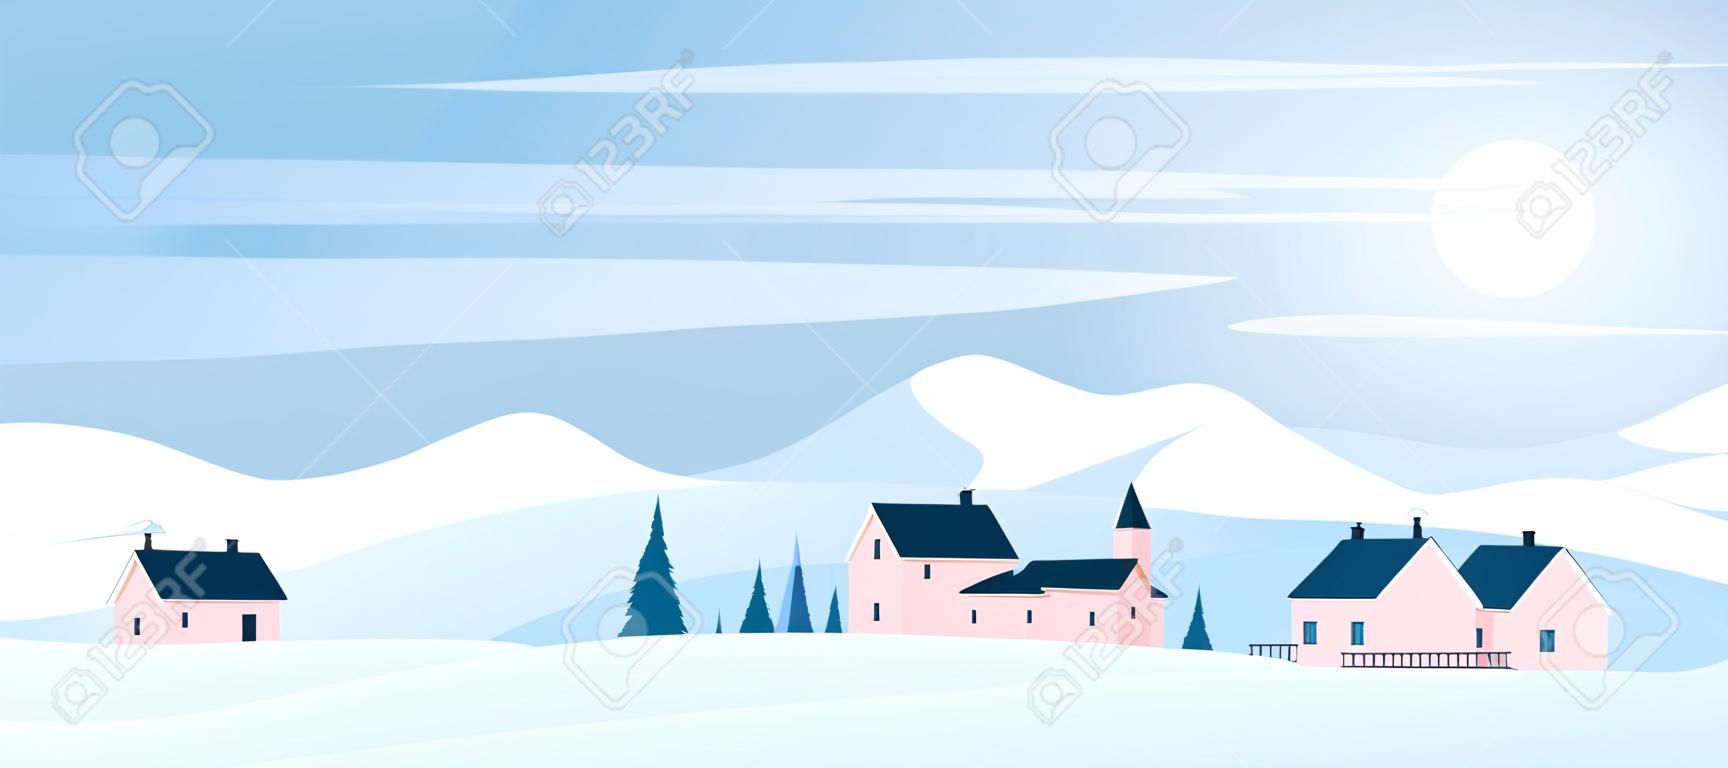 Paysage de campagne de Noël d'hiver avec des montagnes et des collines couvertes d'illustration vectorielle de neige. Paysage de nature ensoleillée de dessin animé avec des maisons de village européen, de forêt et d'arbres dans un design simple